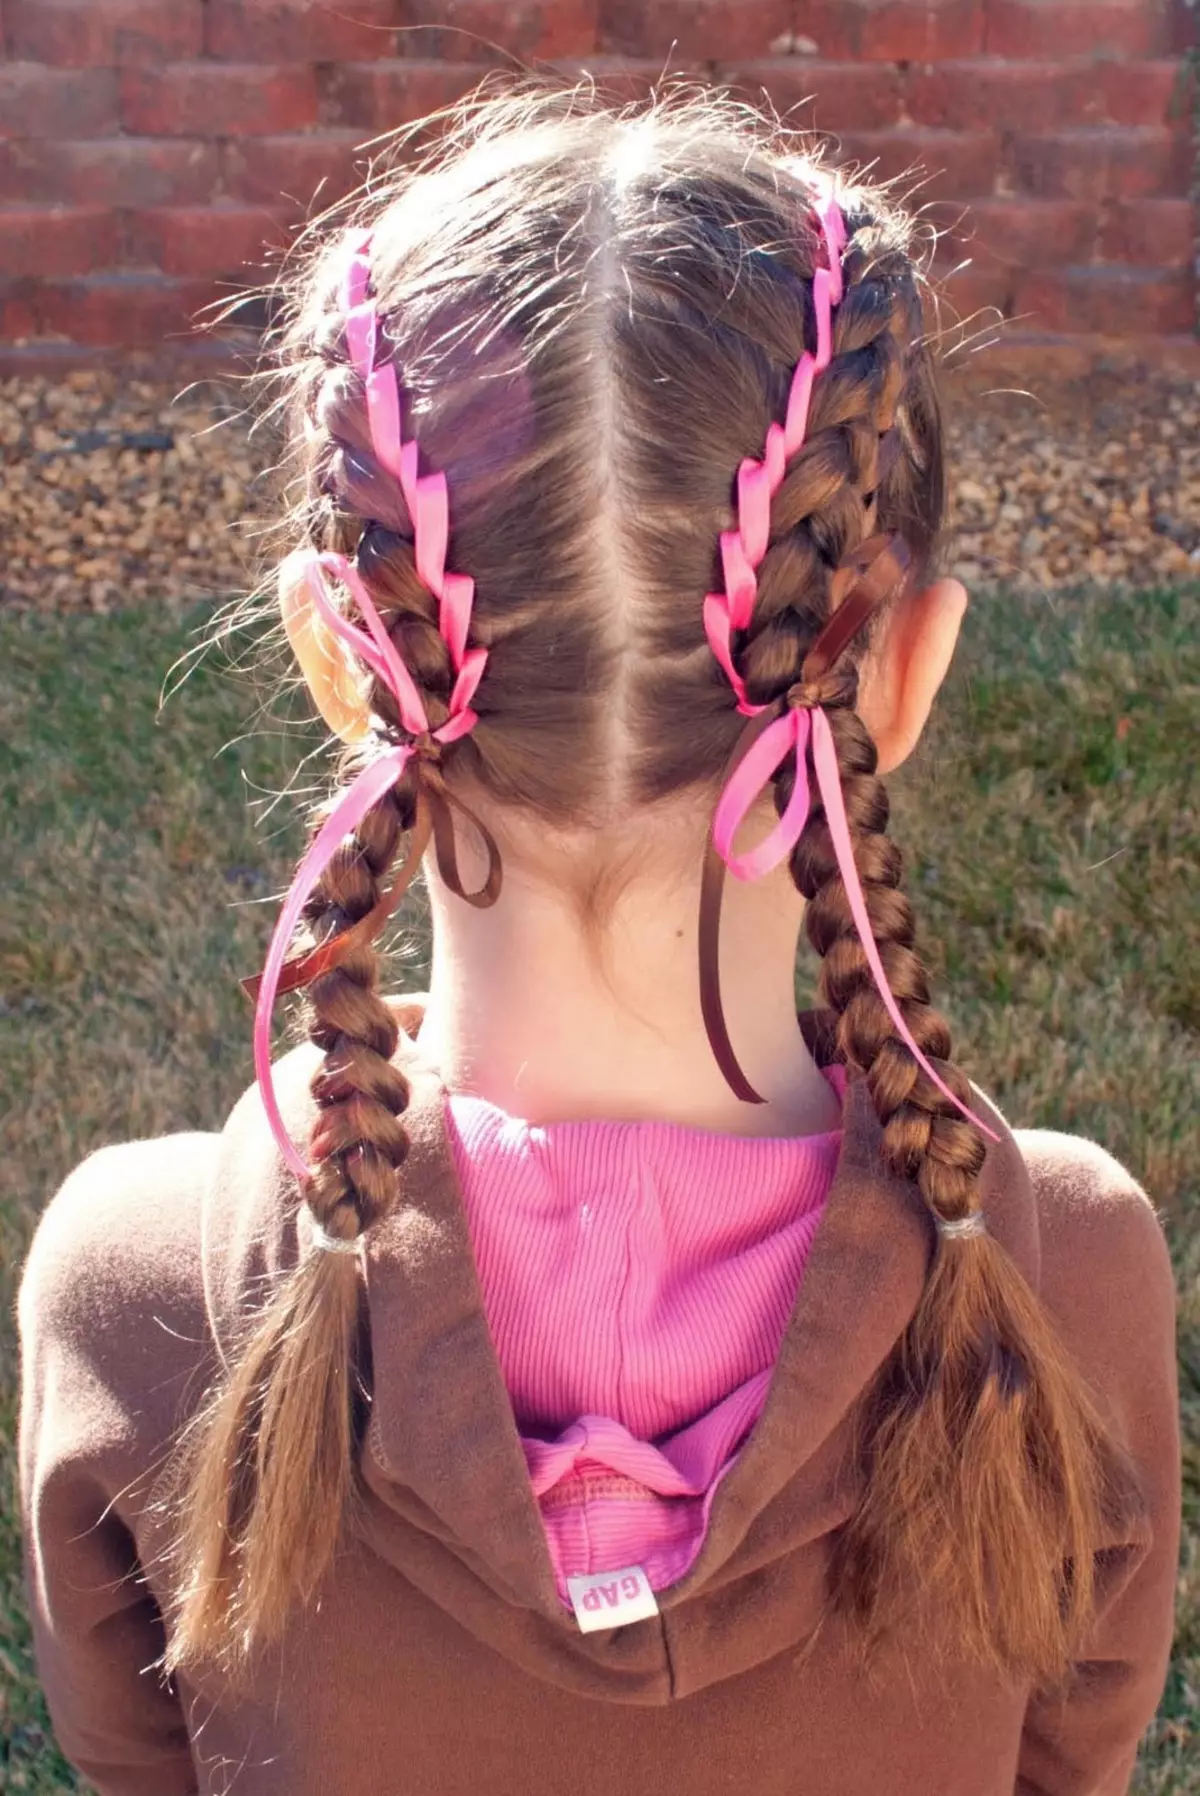 બે પિગટેલ કેવી રીતે વેણી? 61 ફોટા લાંબા વાળથી 2 braids કેવી રીતે વણાટ? બાજુઓ પર braving braids. Braids અને છૂટક વાળ સાથે સુંદર હેરસ્ટાઇલ 5817_48